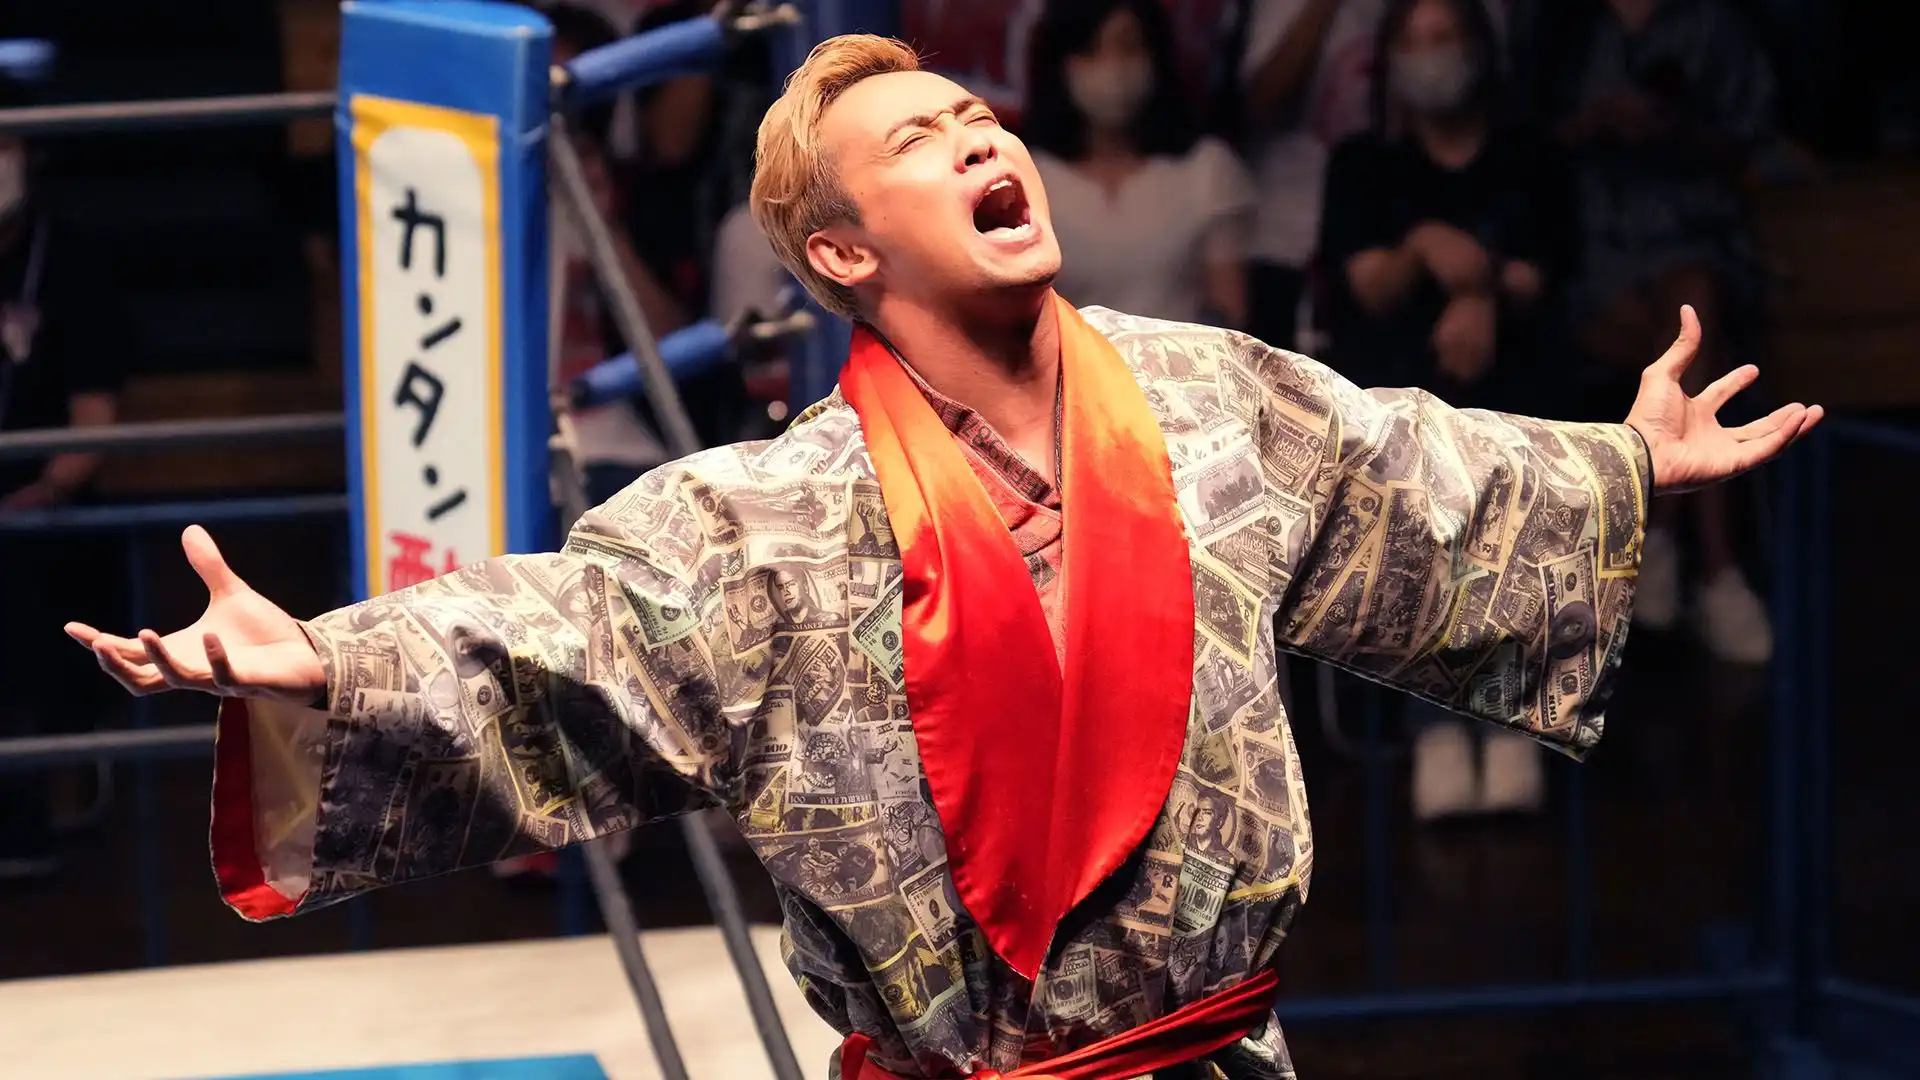 Il Wrestling (Puroresu) è molto seguito in Giappone: la New Japan Pro-wrestling continua ad attirare l'attenzione di un vasto pubblico. Nella foto Kazuchika Okada